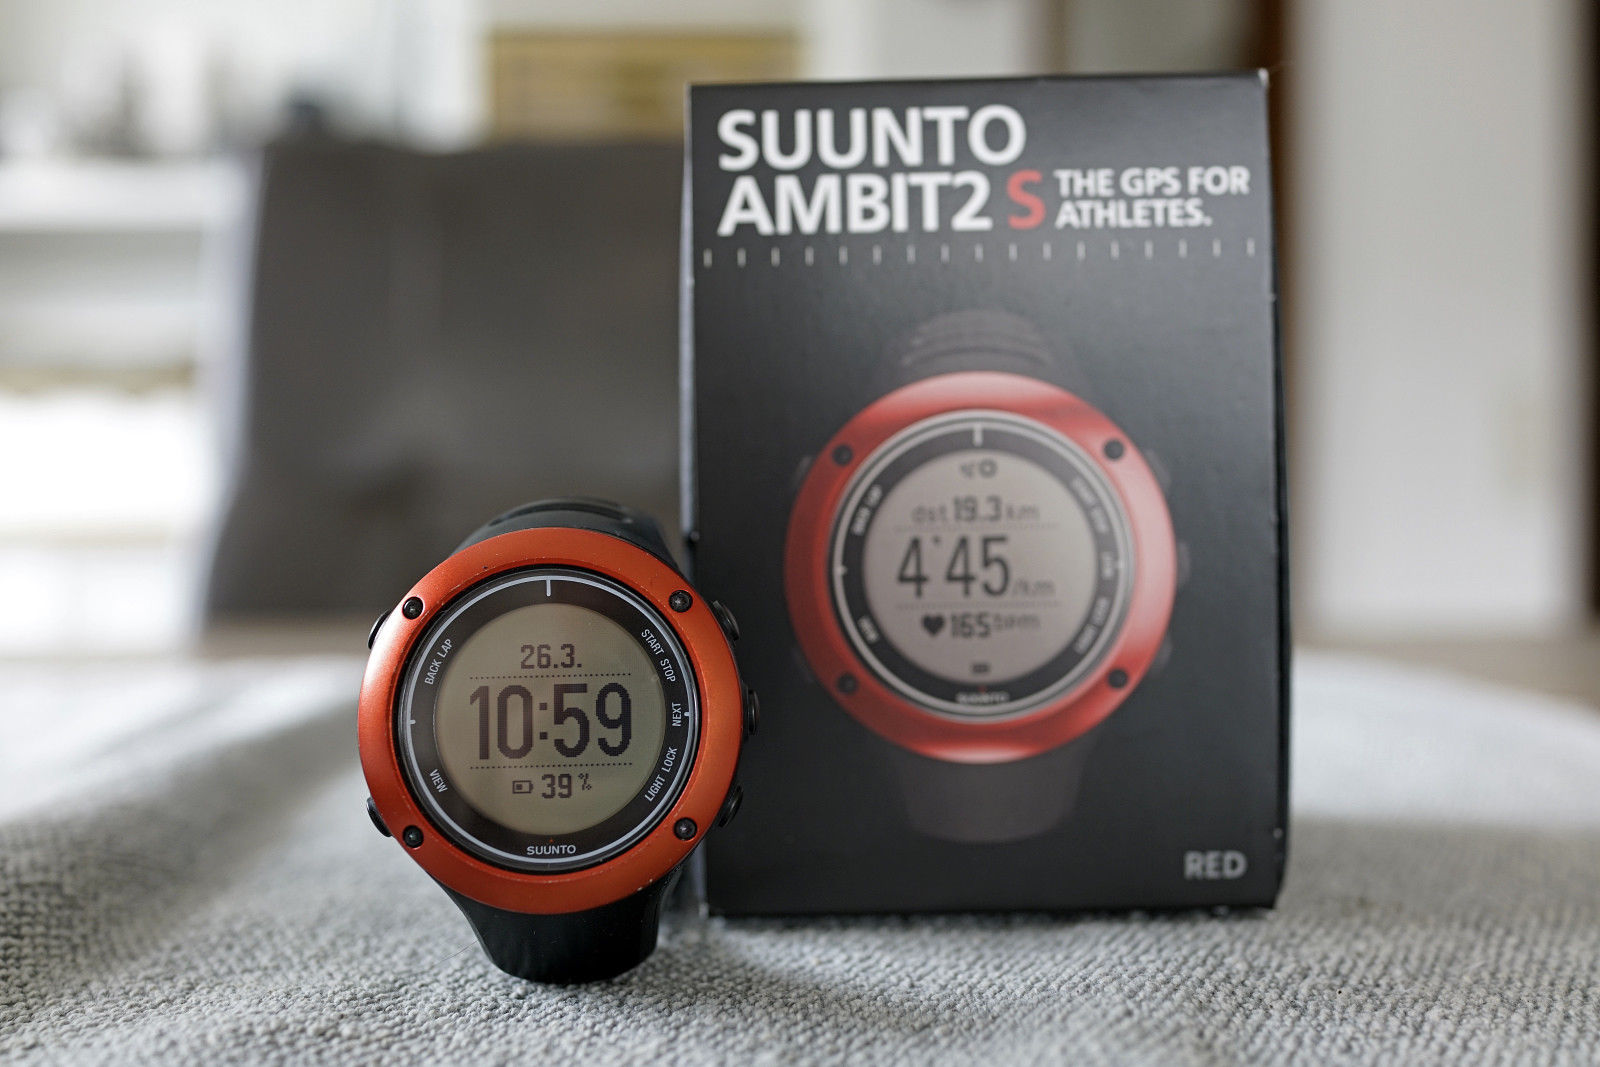 Suunto Ambit 2 S schwarz/rot GPS Uhr Fitnessuhr OVP guter Zustand